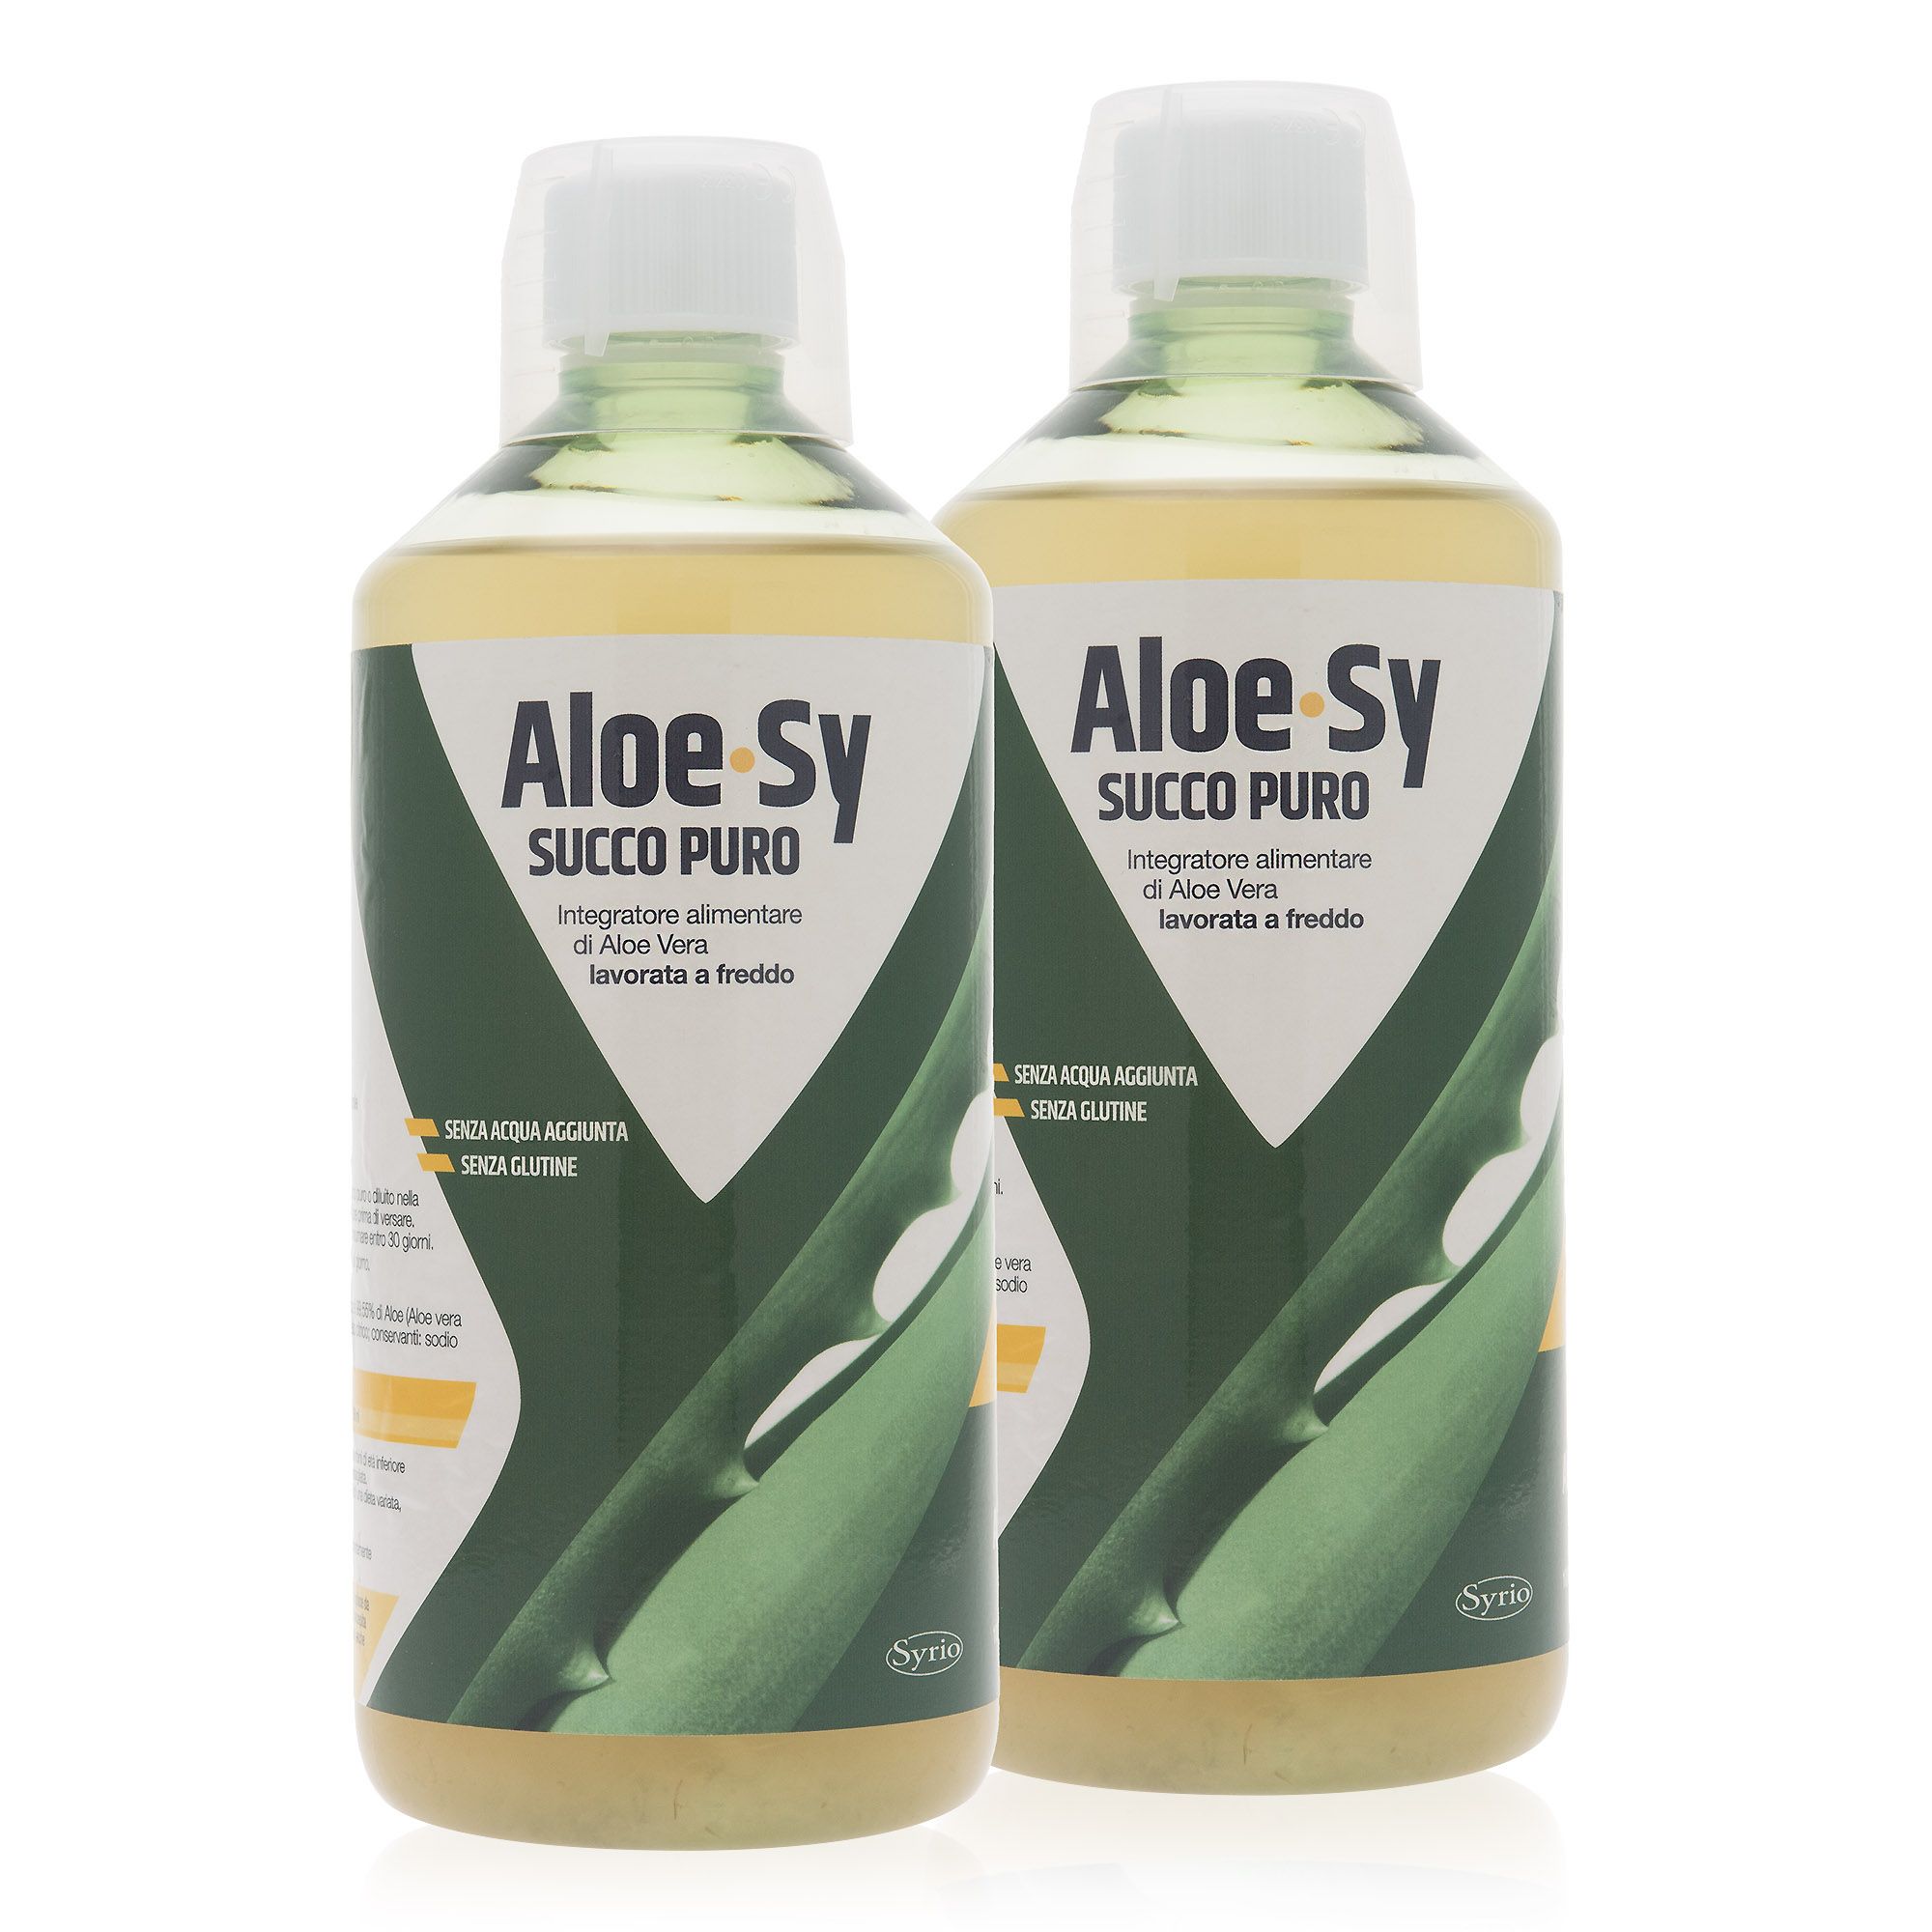 Image of Aloe Sy integratore alimentare succo di aloe vera (2 x 1000ml)